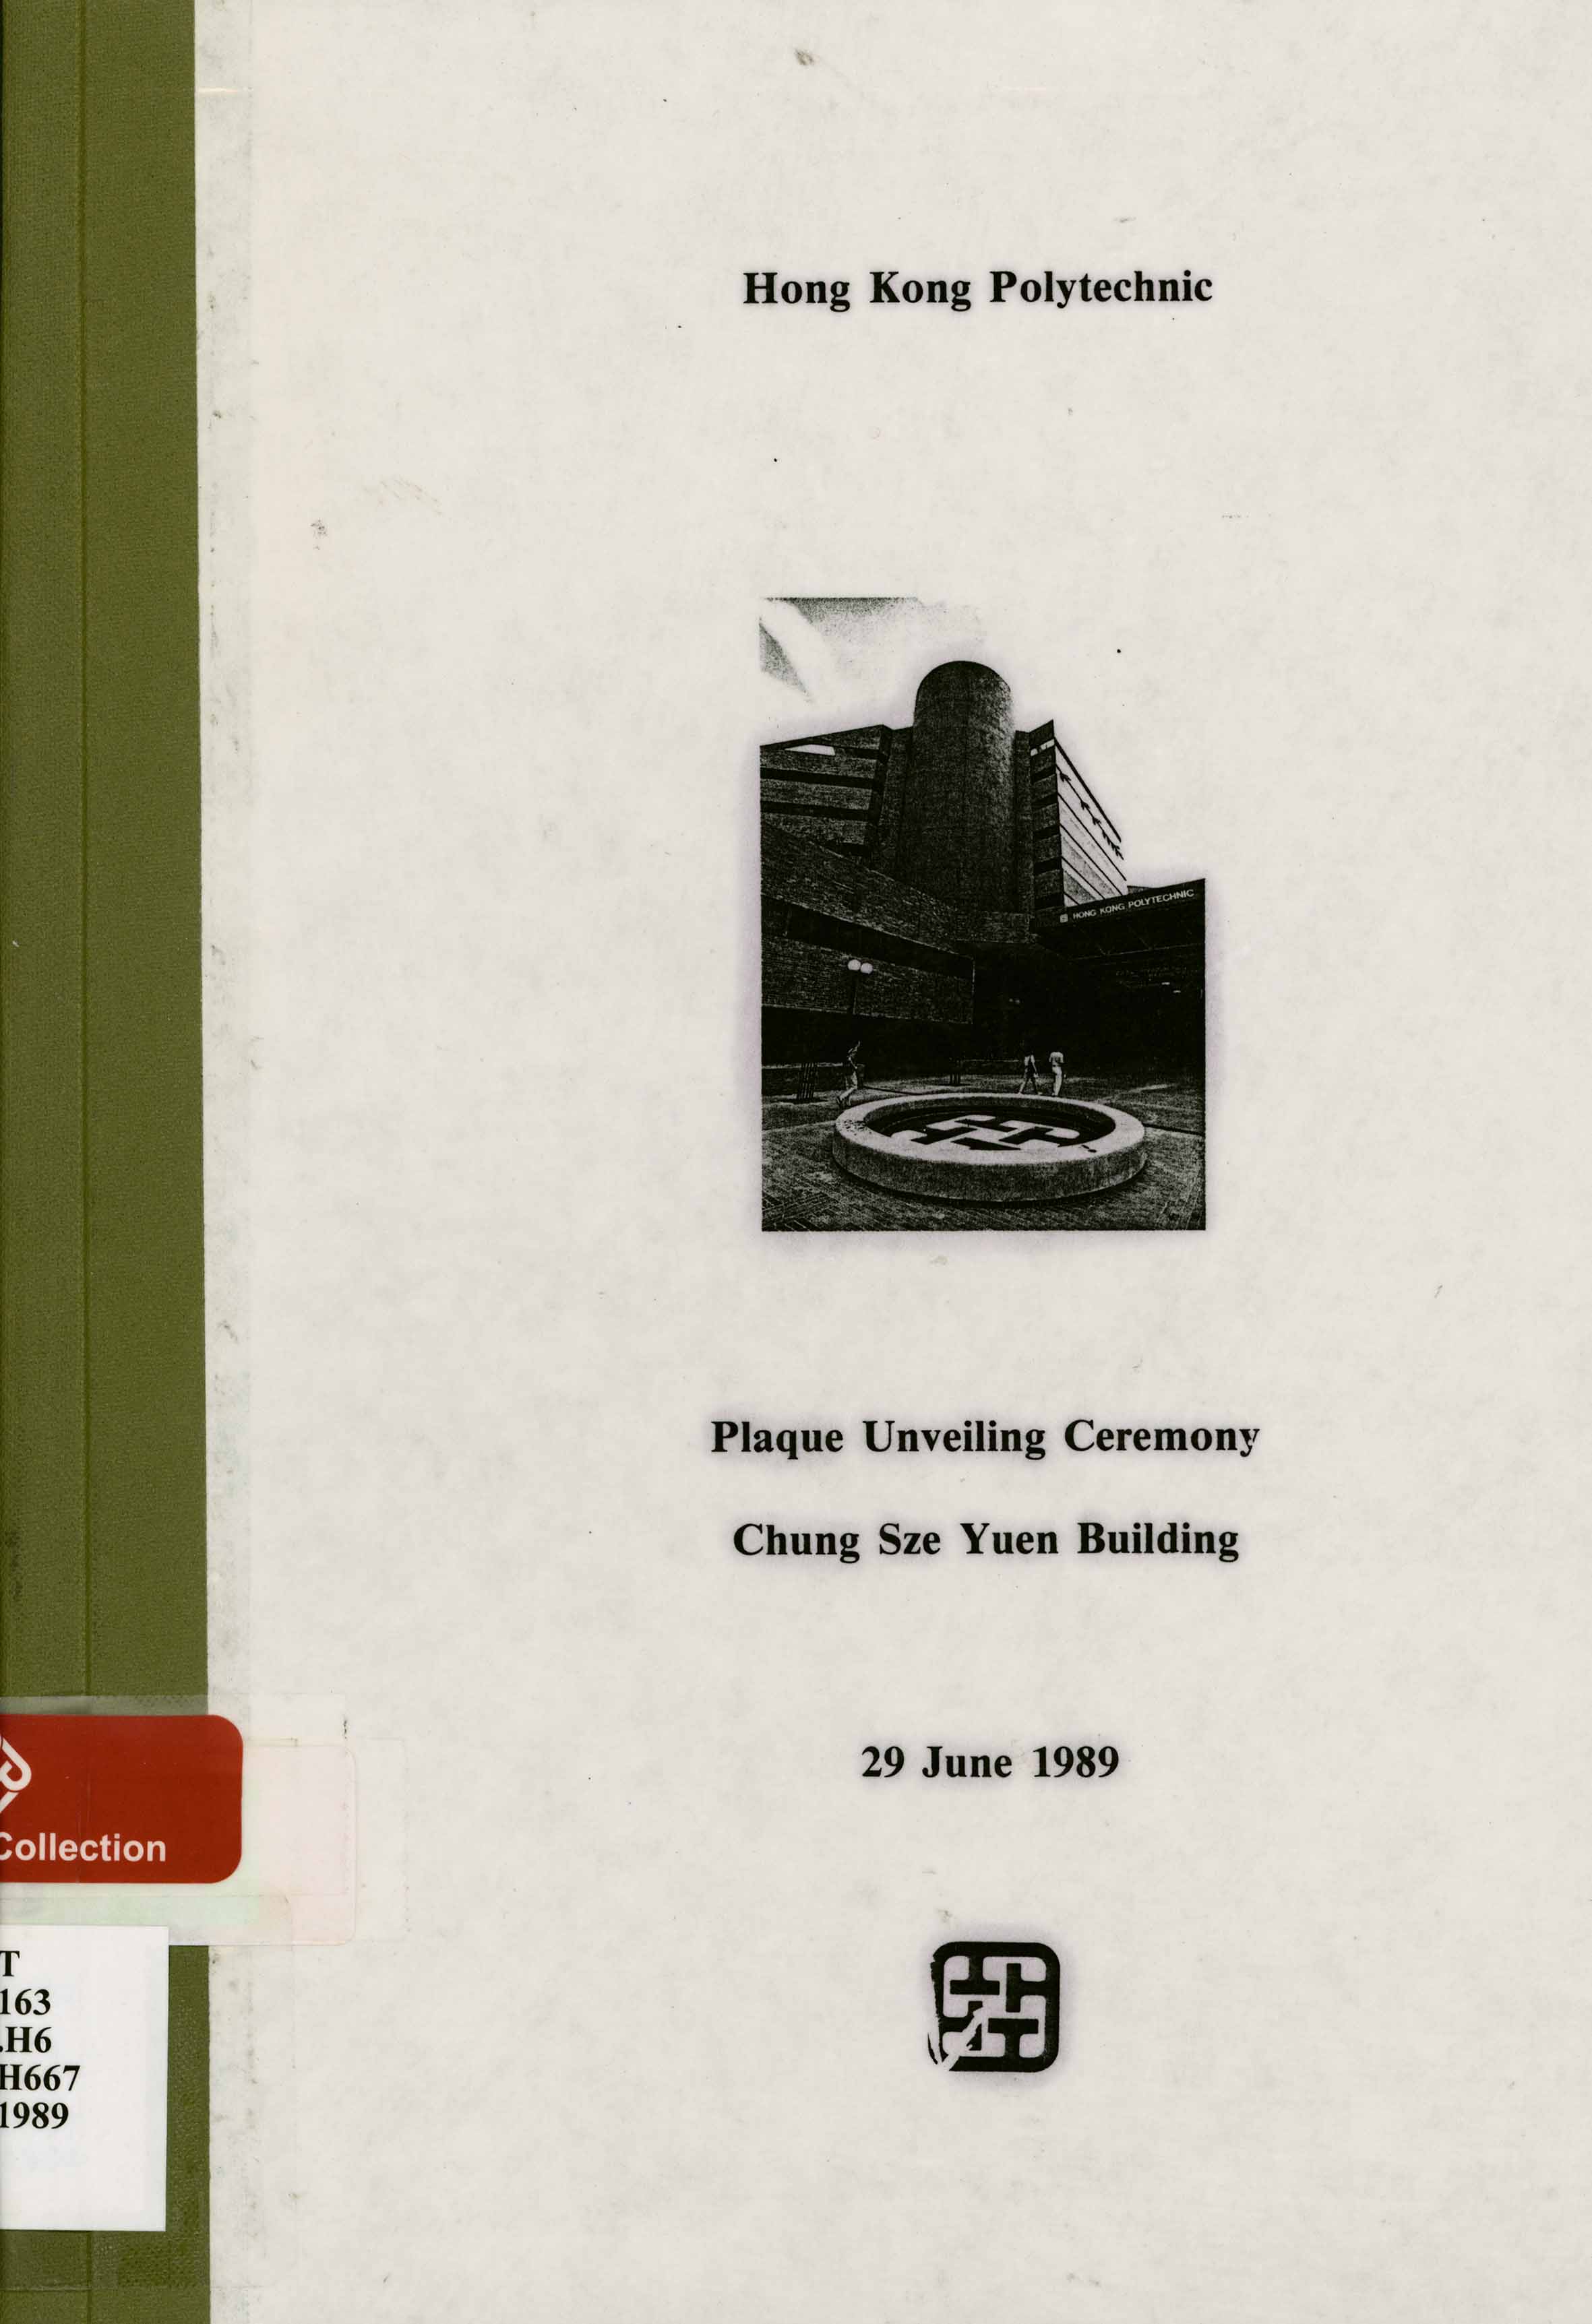 Plaque unveiling ceremony : Chung Sze Yuen Building, 29 June 1989